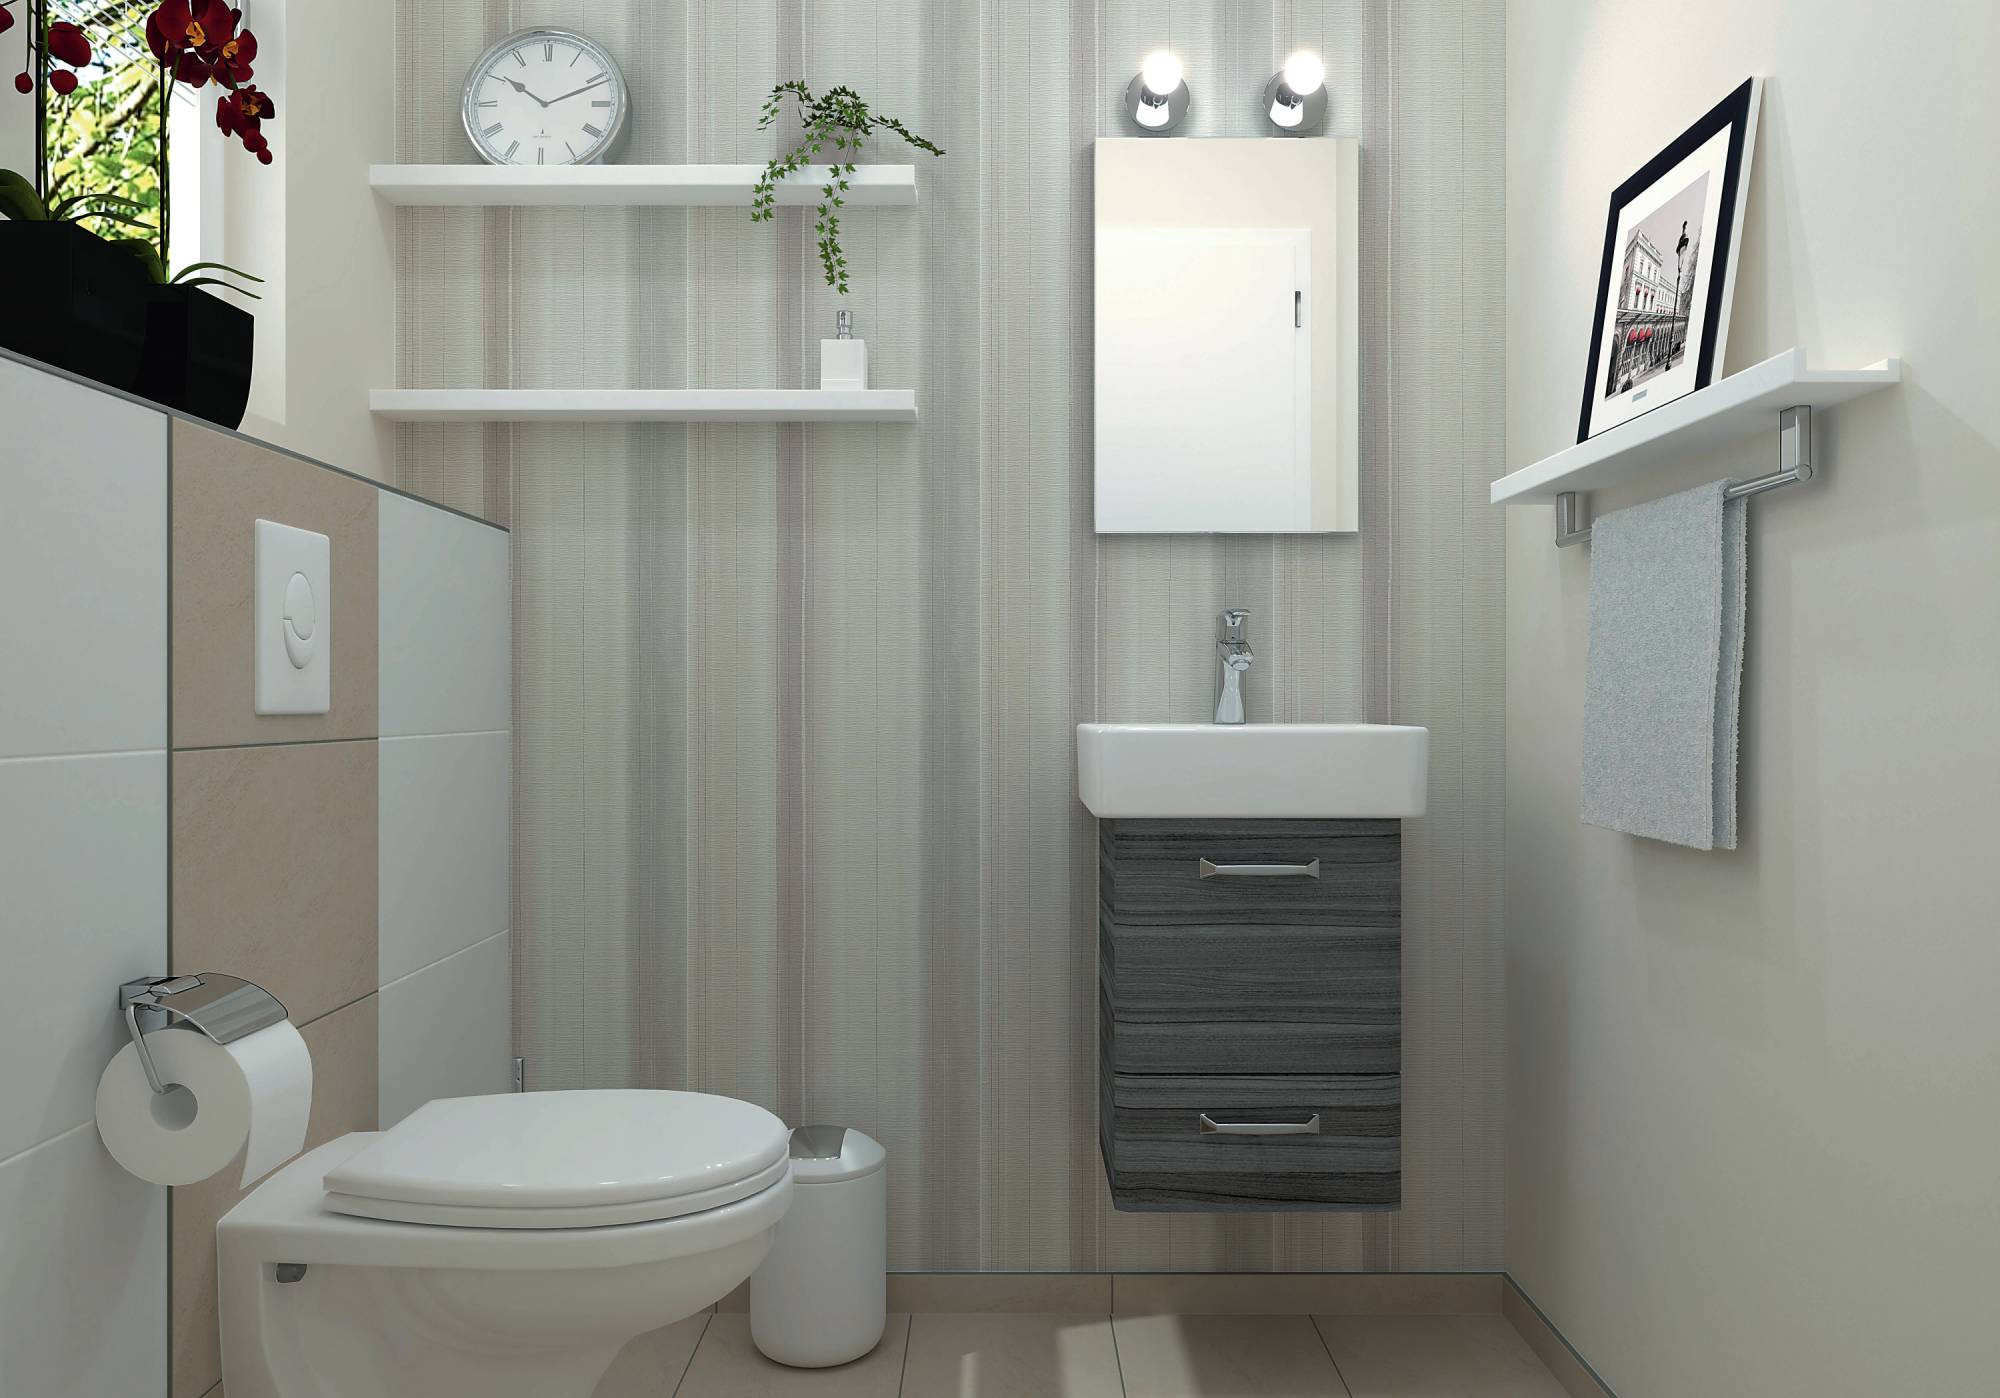 Gäste-Wc Planen Und Gestalten – Ideen Und Tipps | Obi for Badezimmer Toilette